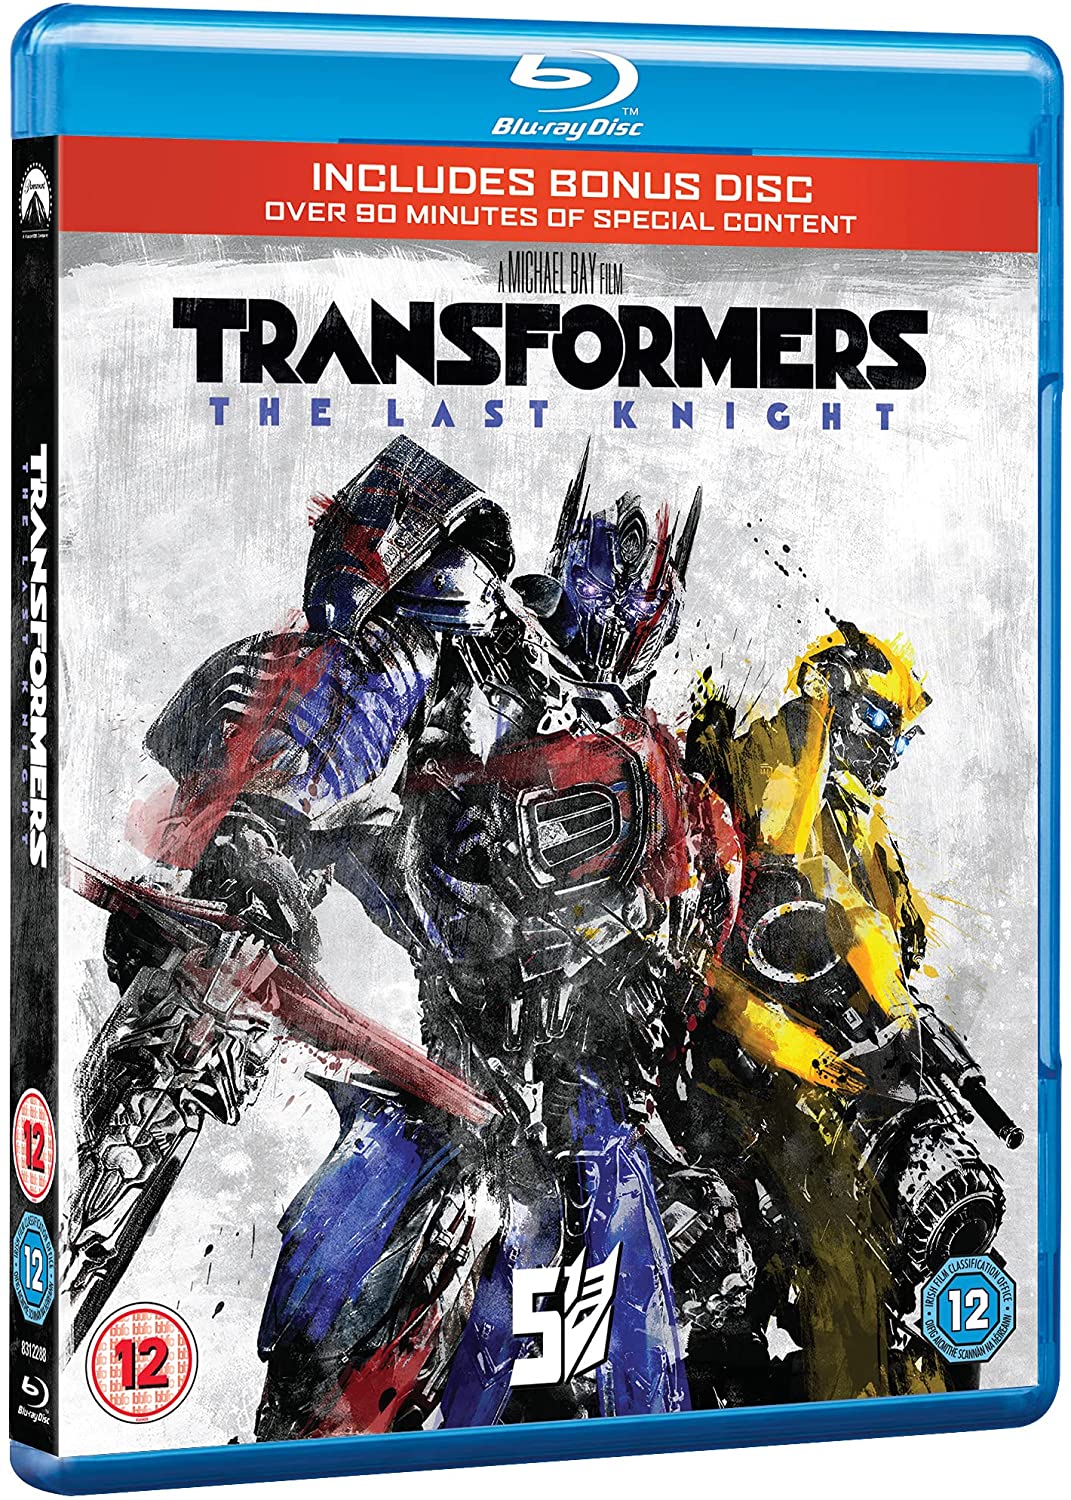 Transformers: The Last Knight (BD+ Bonusdisc BD) [Blu-ray] [2017] [Regiovrij]